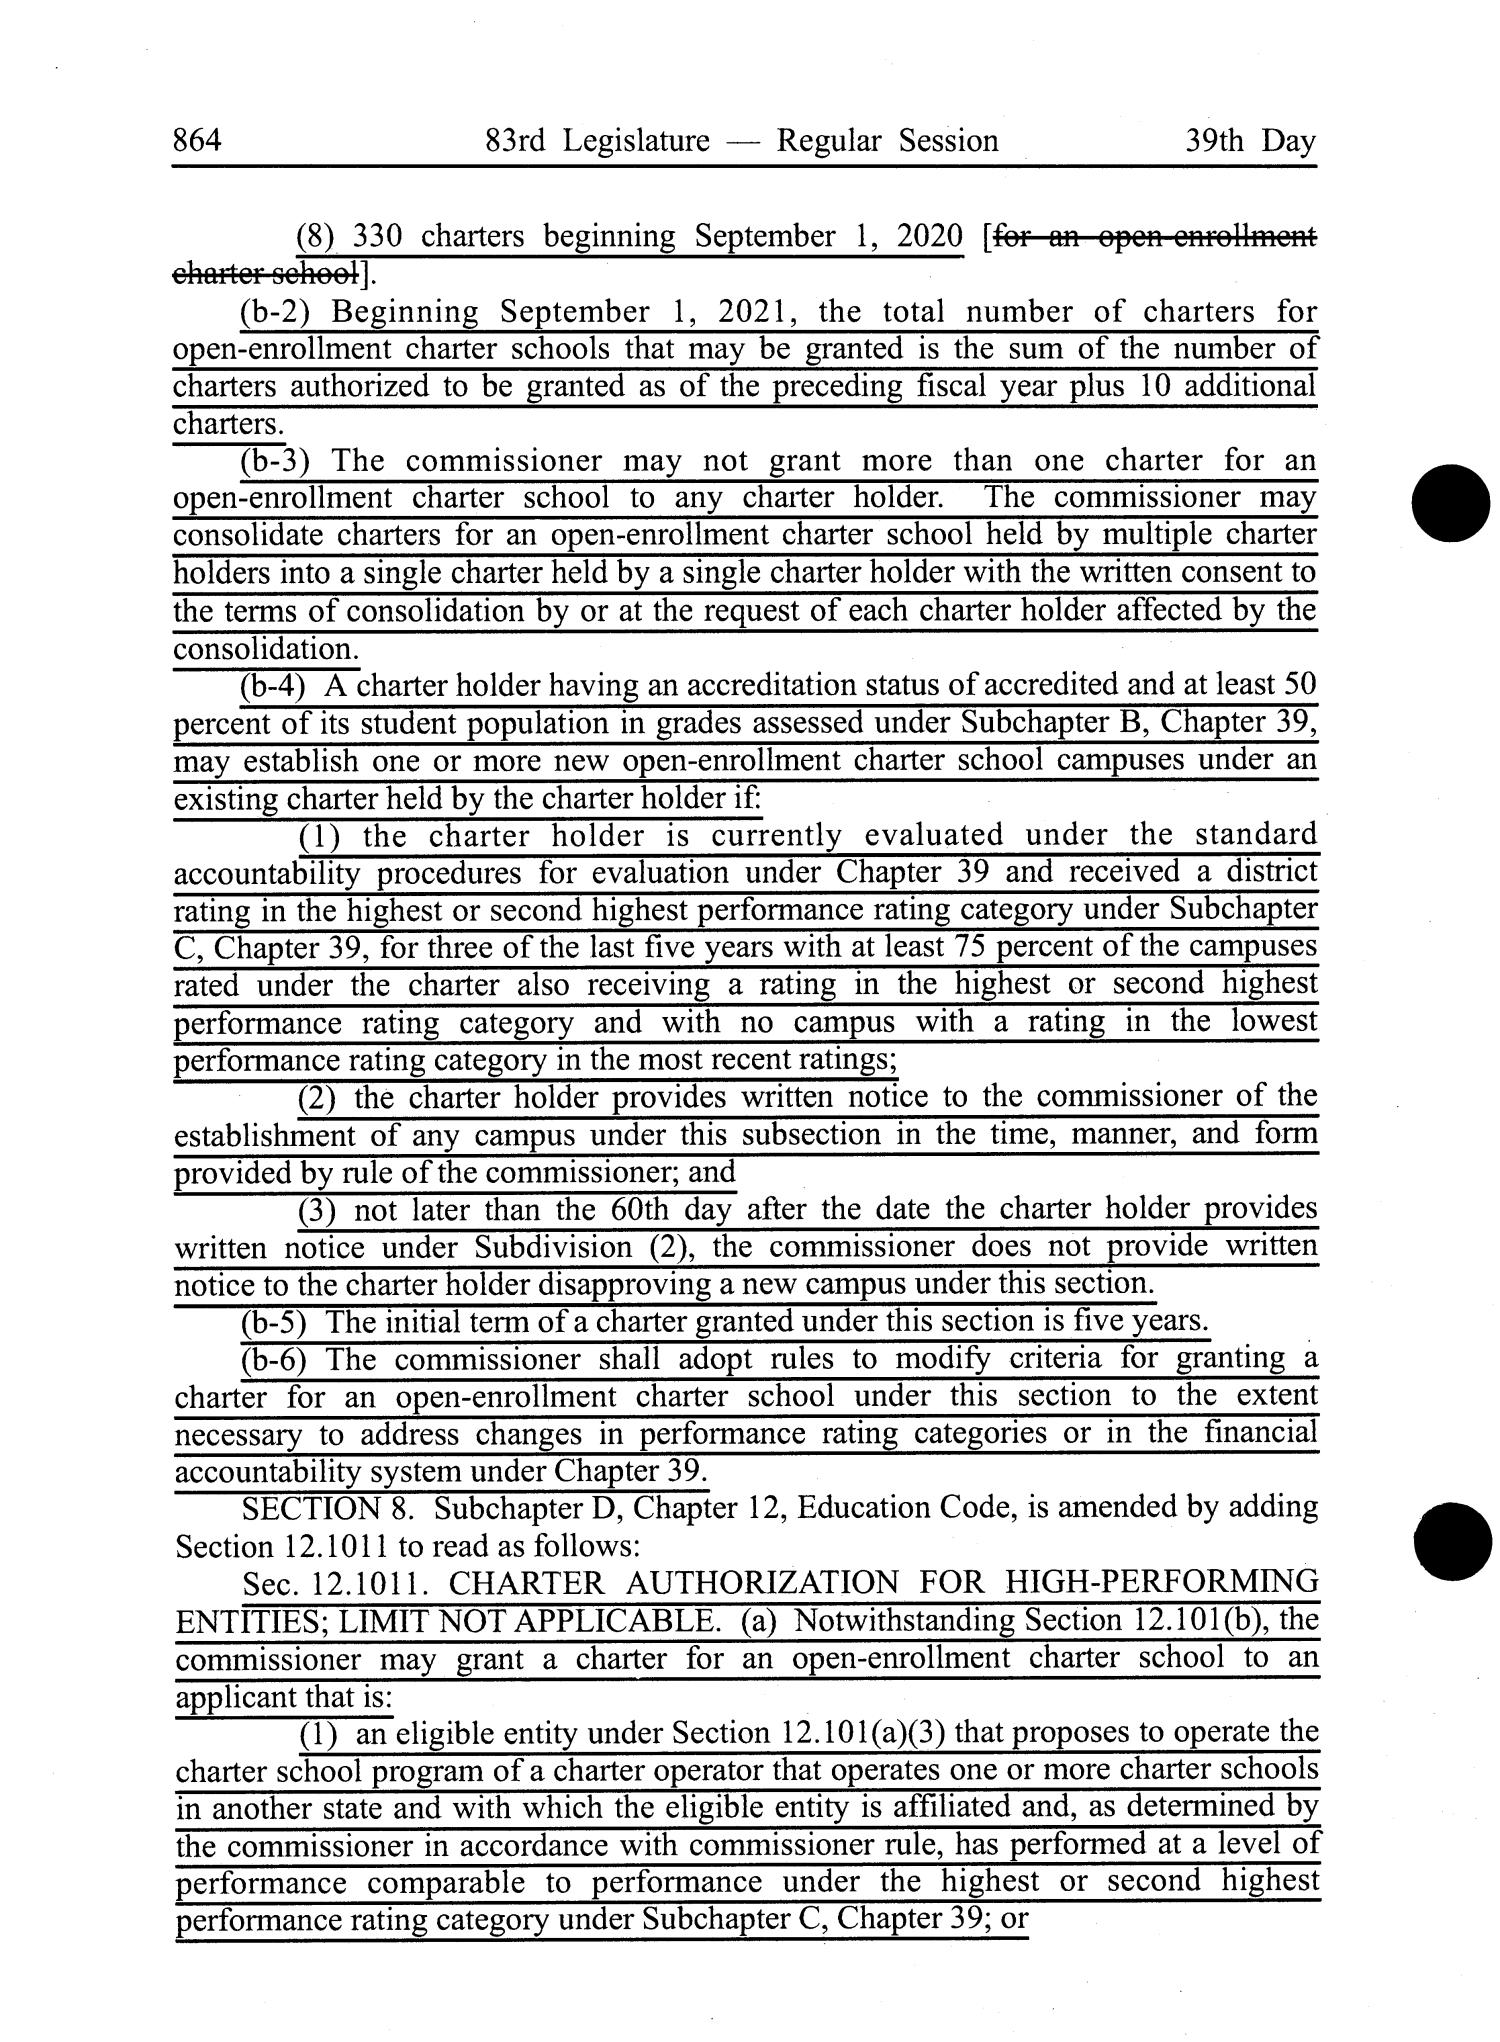 Journal of the Senate of Texas: 83rd Legislature, Regular Session, Thursday, April 11, 2013
                                                
                                                    864
                                                